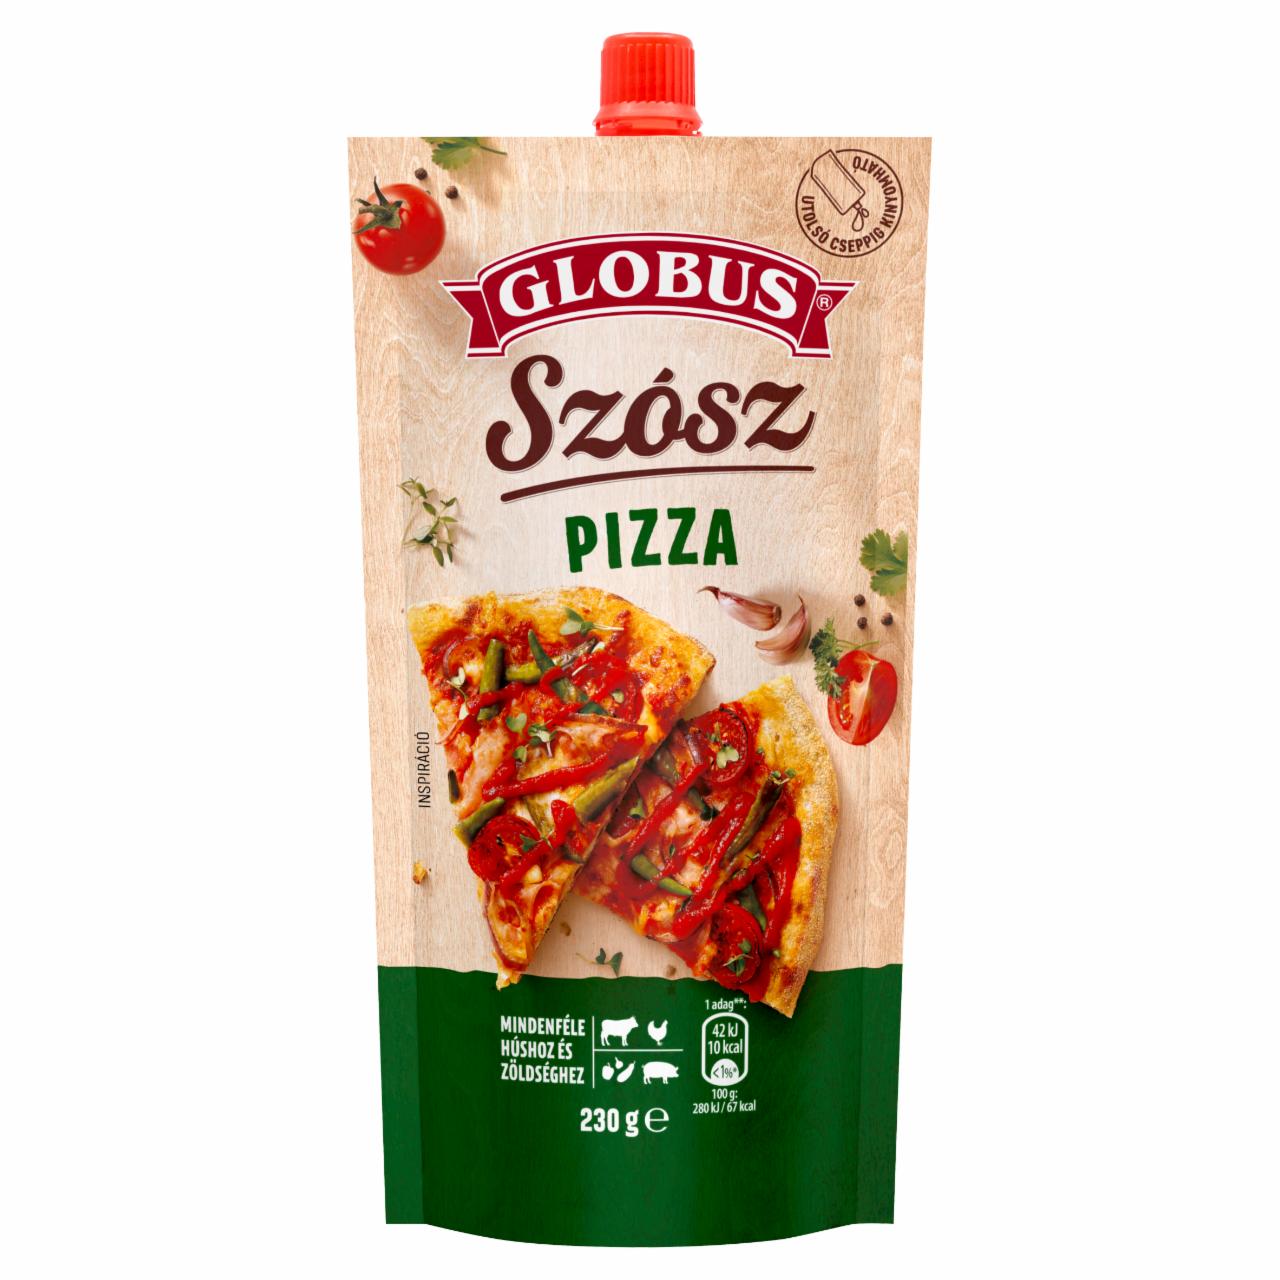 Képek - Globus pizza szósz 230 g